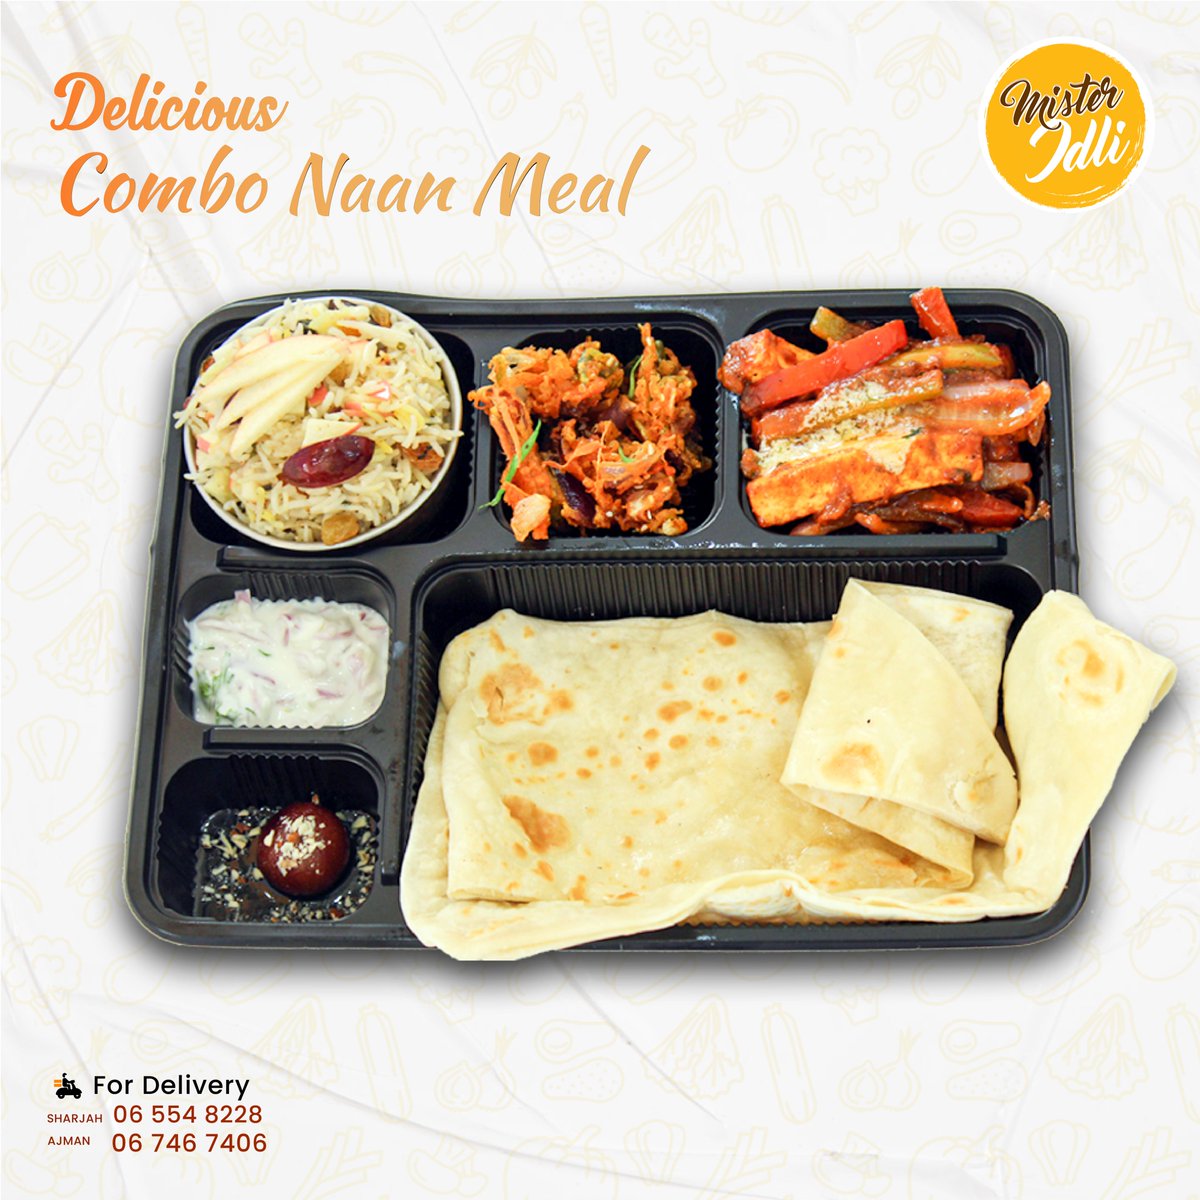 Combo Naan Meal: The Ultimate Indian Food Experience at Mister Idli, Come and Visit us Today!!!
.
.
.
#ComboMeal #UAEFoodie #BestIndianRestaurantUAE #MIsterIdliAjman #MisterIdliSharjah #MisterIdli